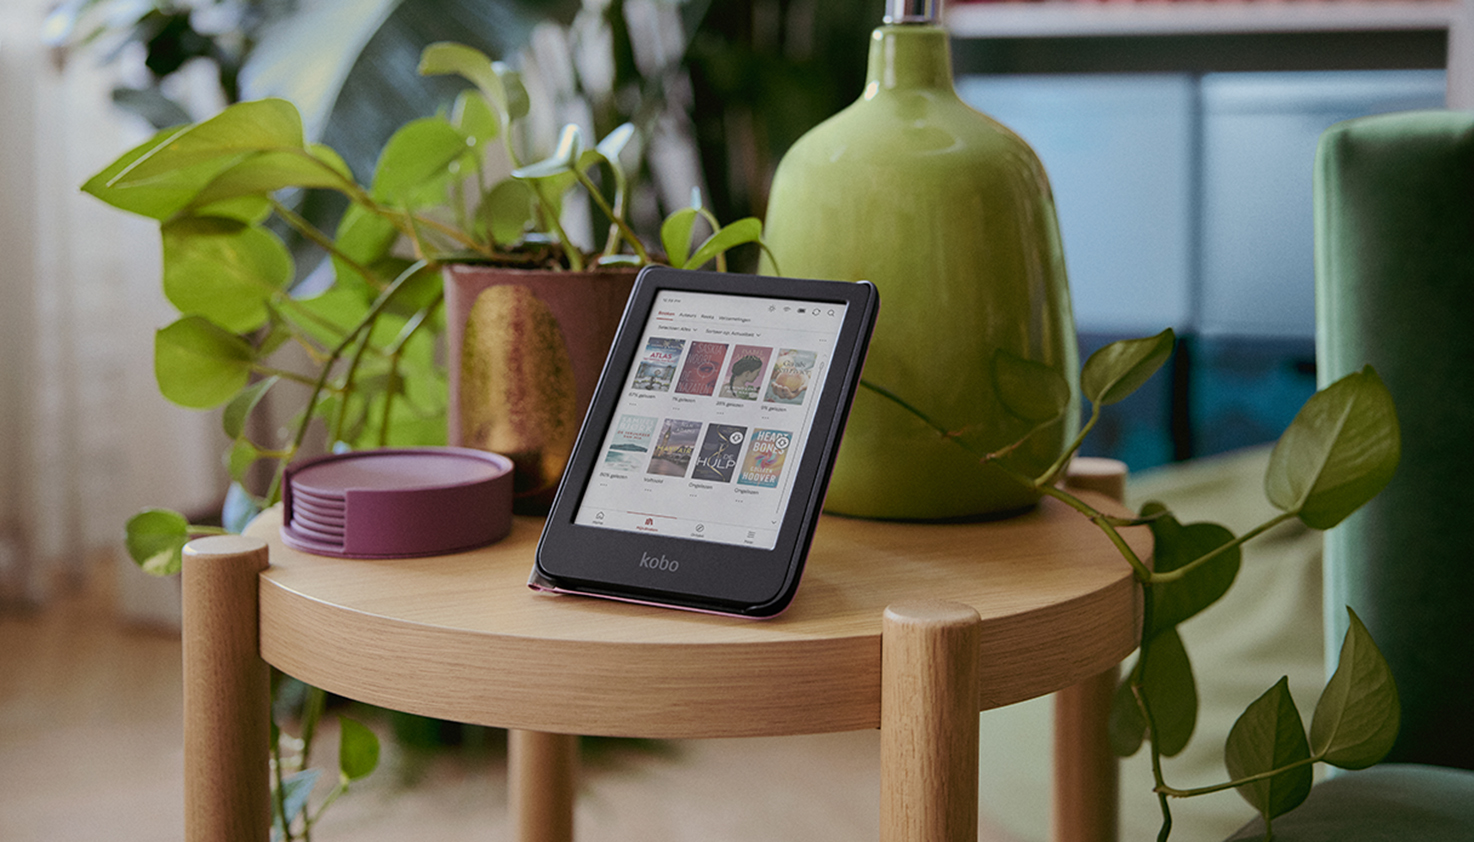 Le e-reader Kobo est posé sur une table avec des plantes.